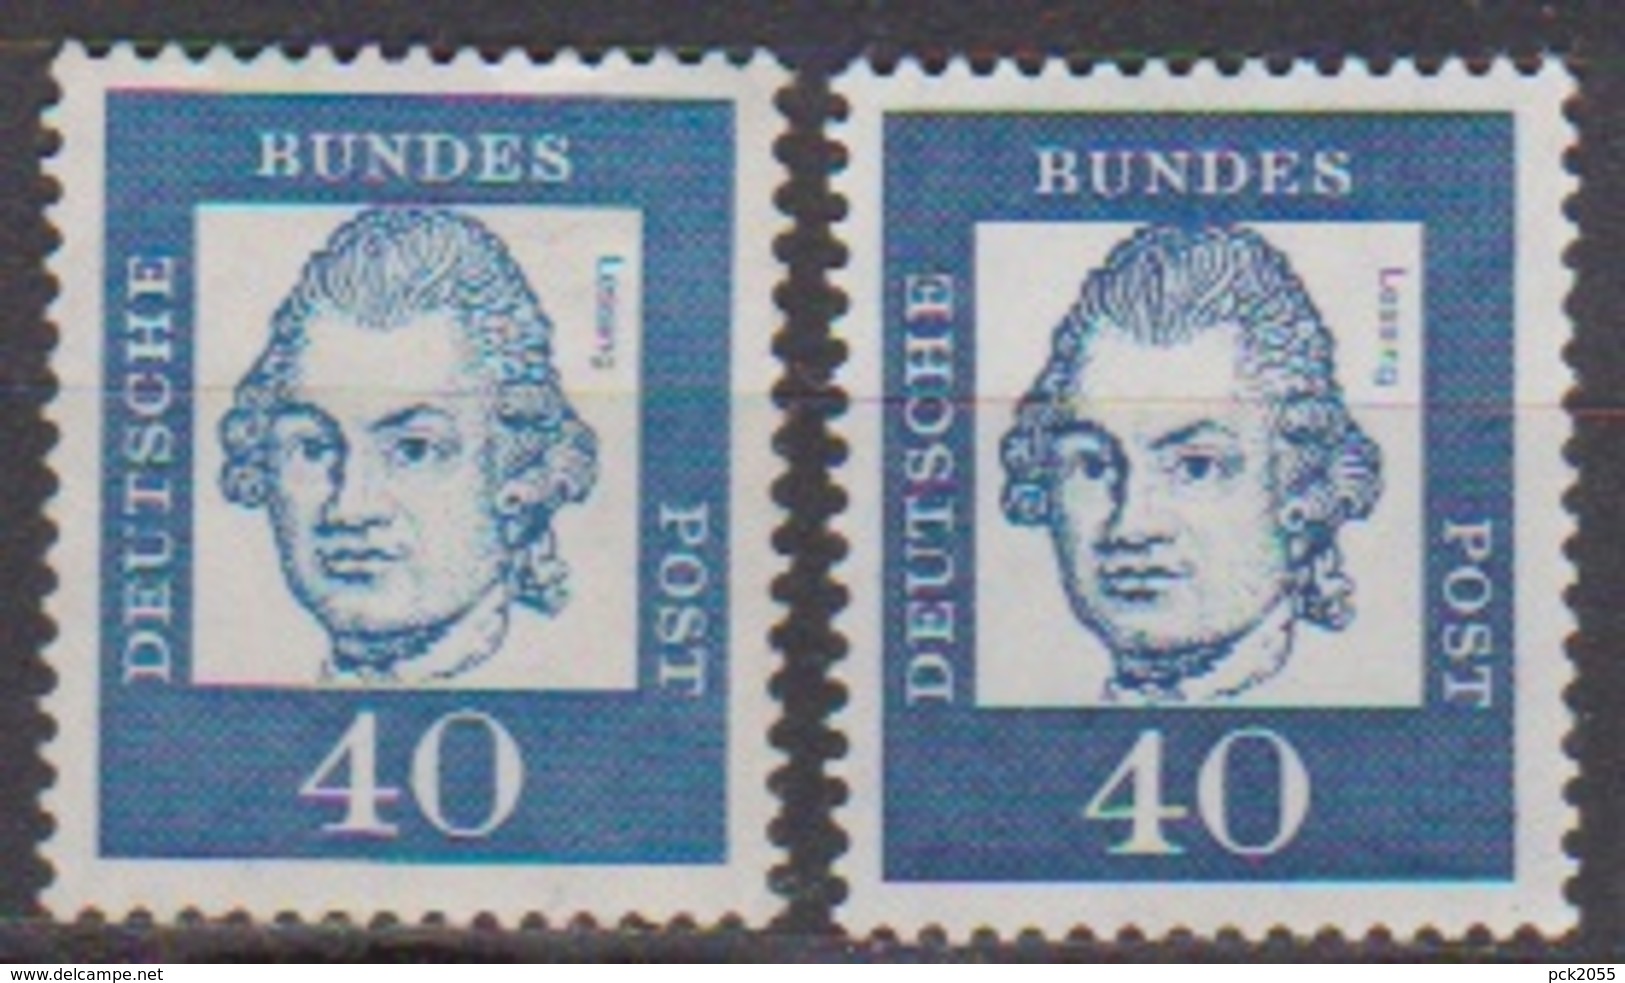 BRD 1961 MiNr. 355x + Y ** Postfr.Bedeutende Deutsche ( 6863 )günstige Versandkosten - Ungebraucht